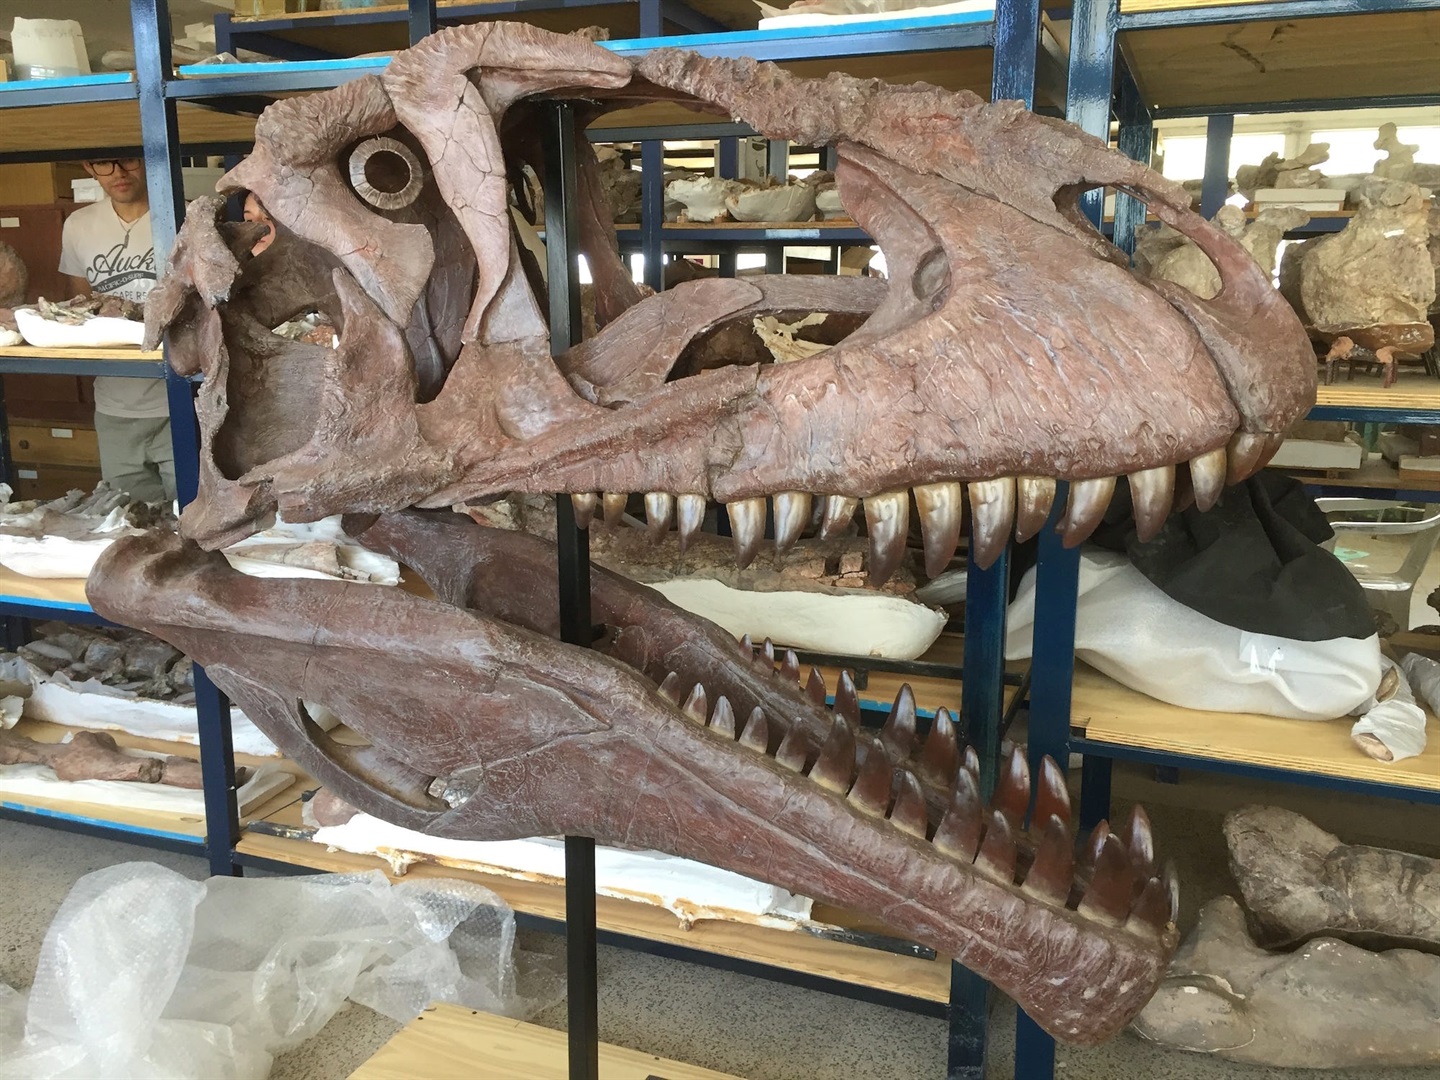 Para ilmuwan menemukan dinosaurus besar dengan lengan kecil seperti T. rex, memperdalam misteri mengapa mereka berevolusi seperti itu